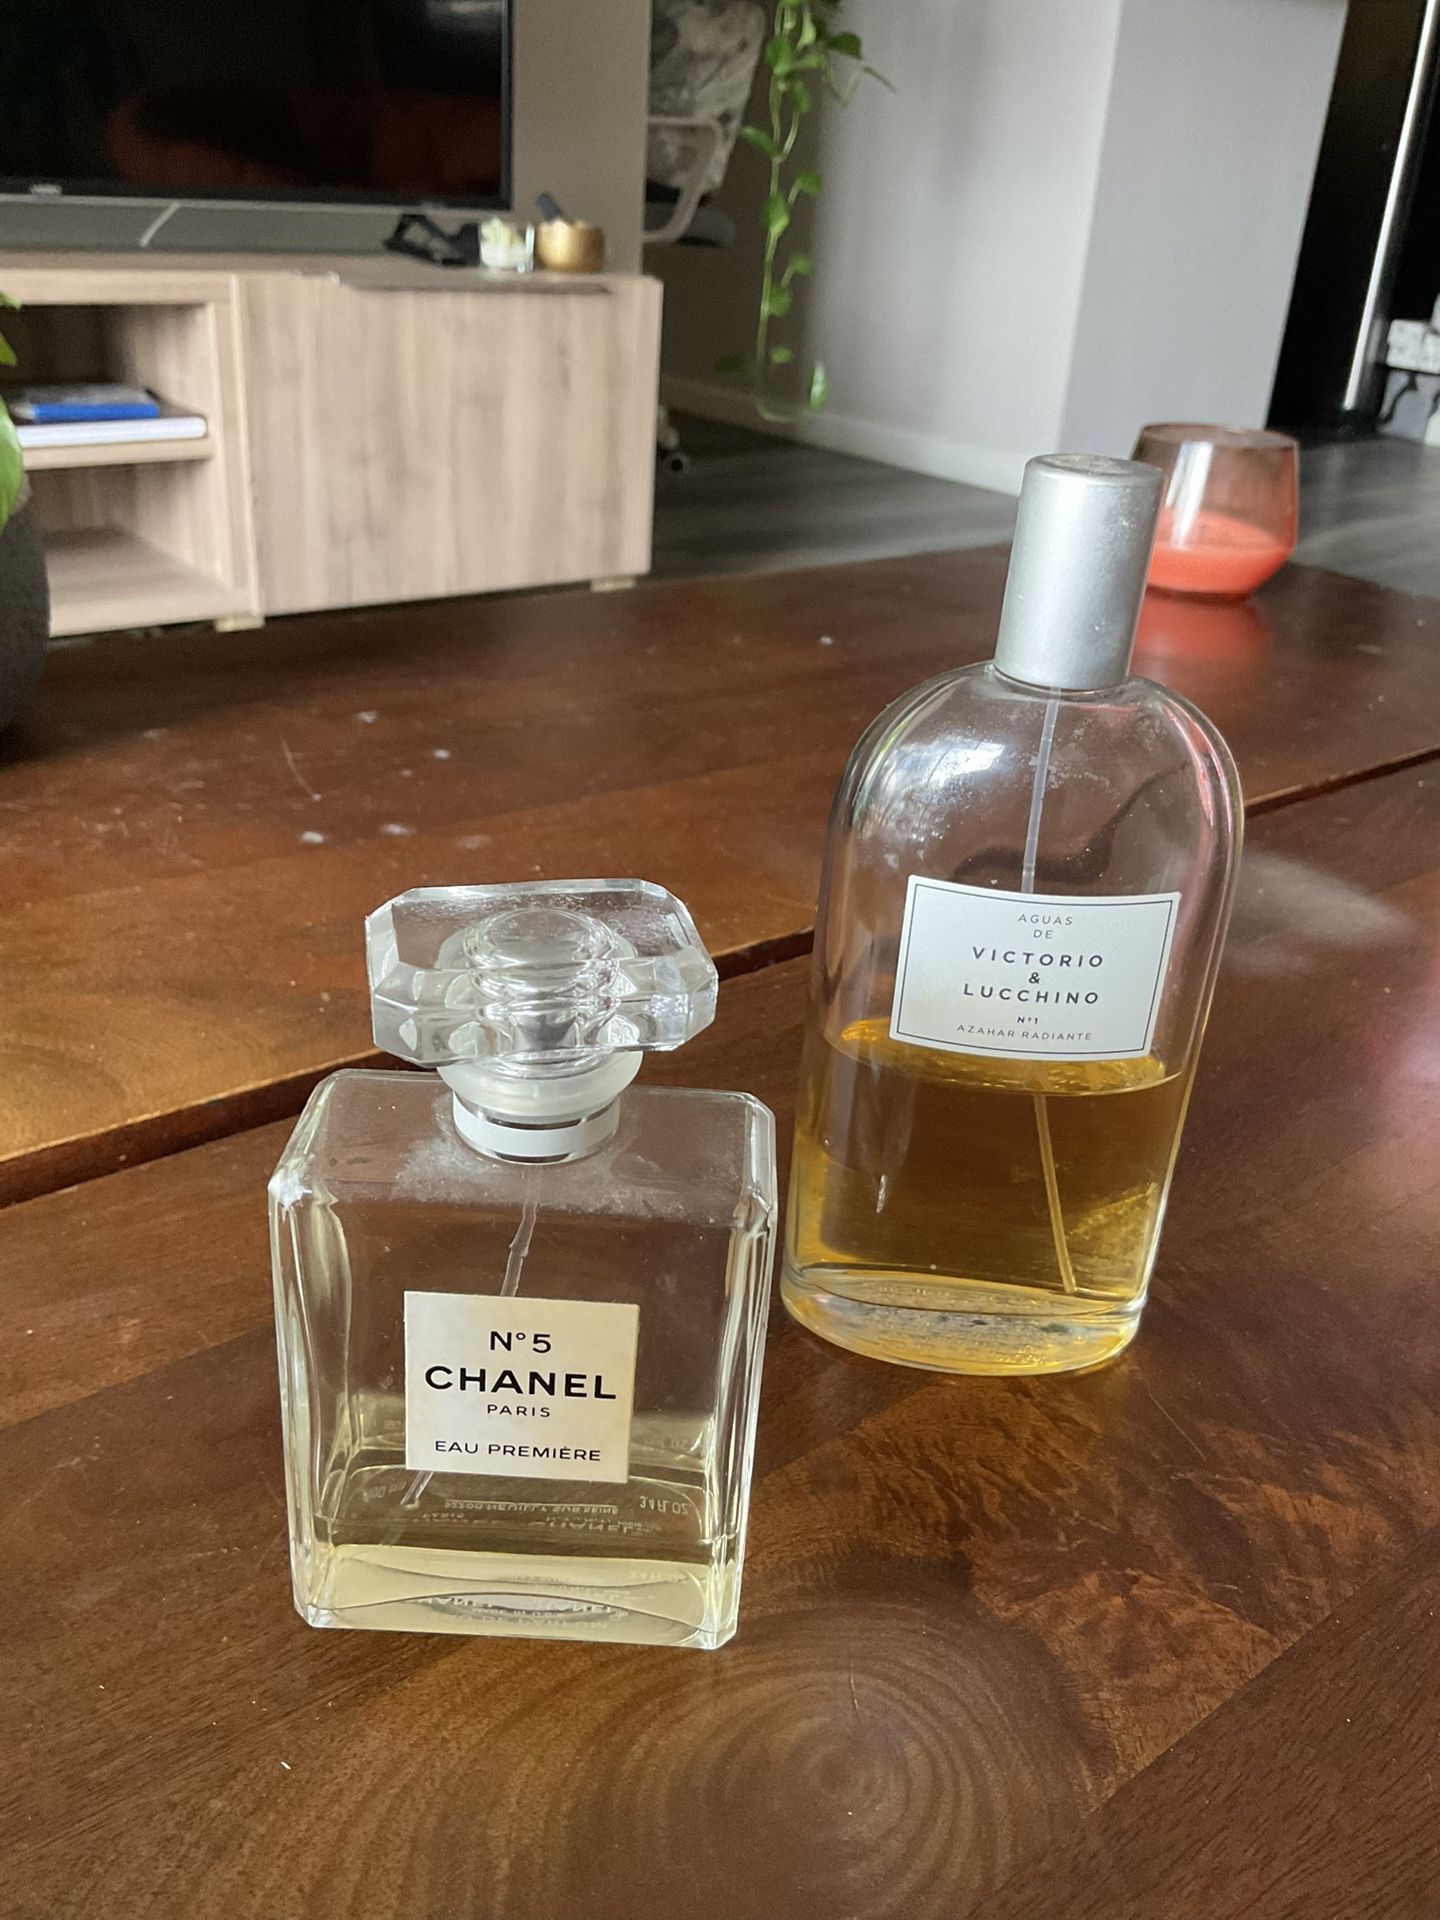 2 Perfumes 30$ - Chanel n 5 + Victorio&Lucchino n 1 